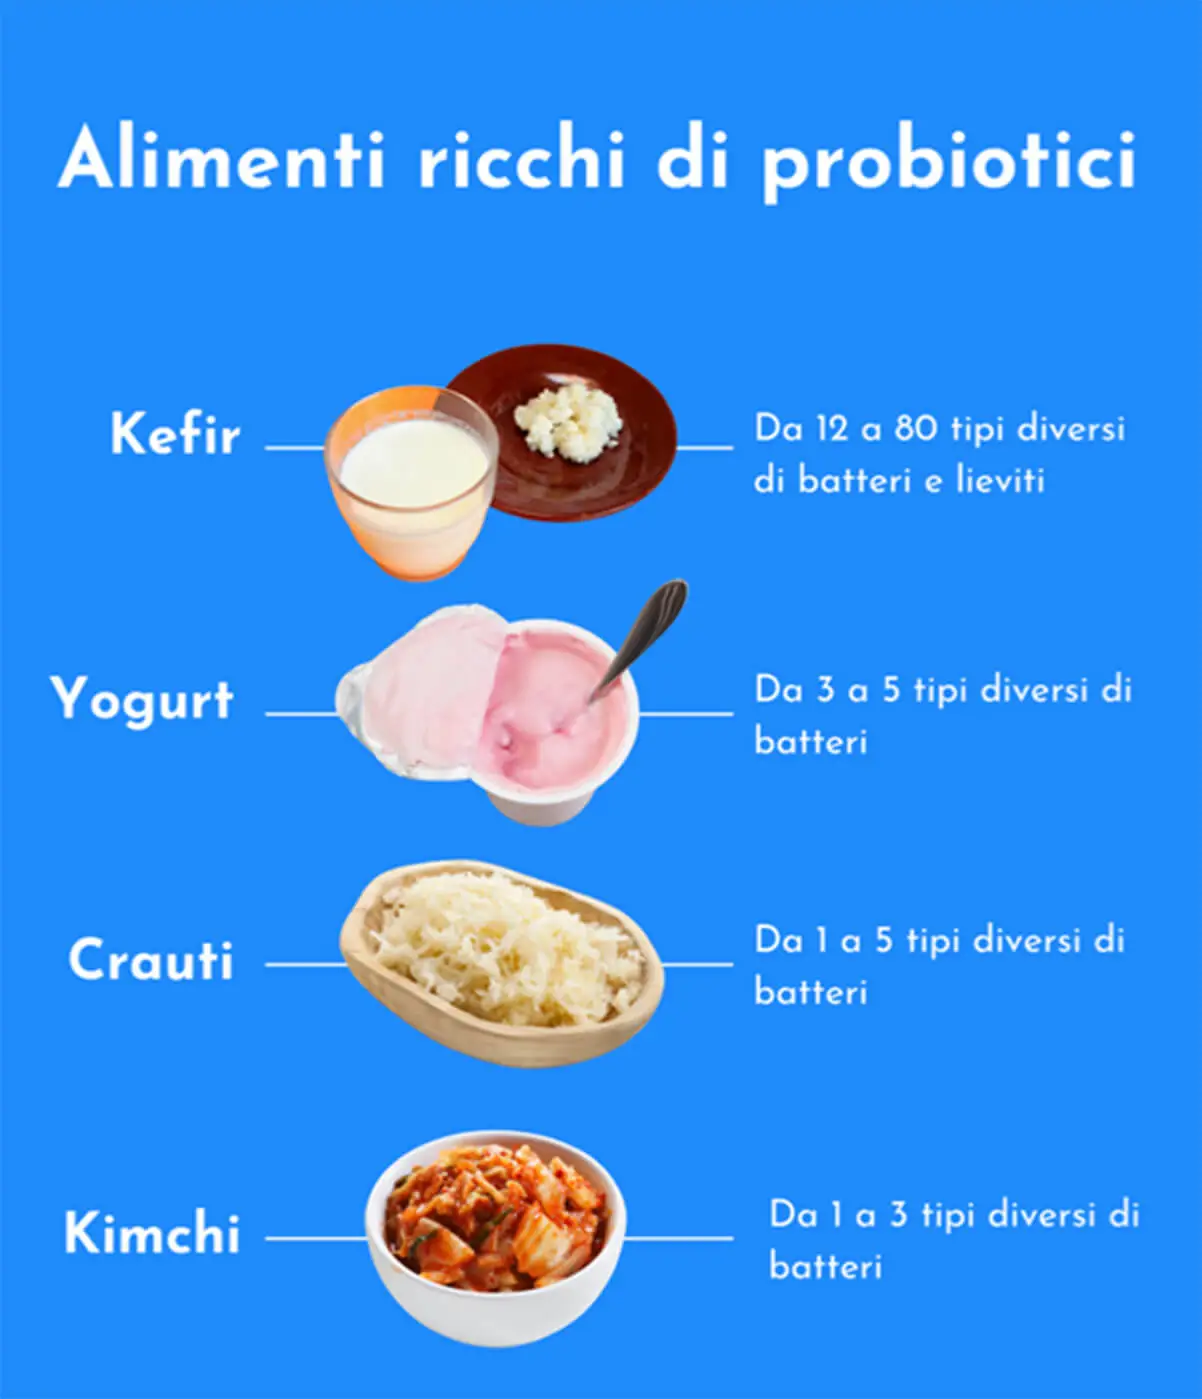 Alimenti ricchi di probiotici